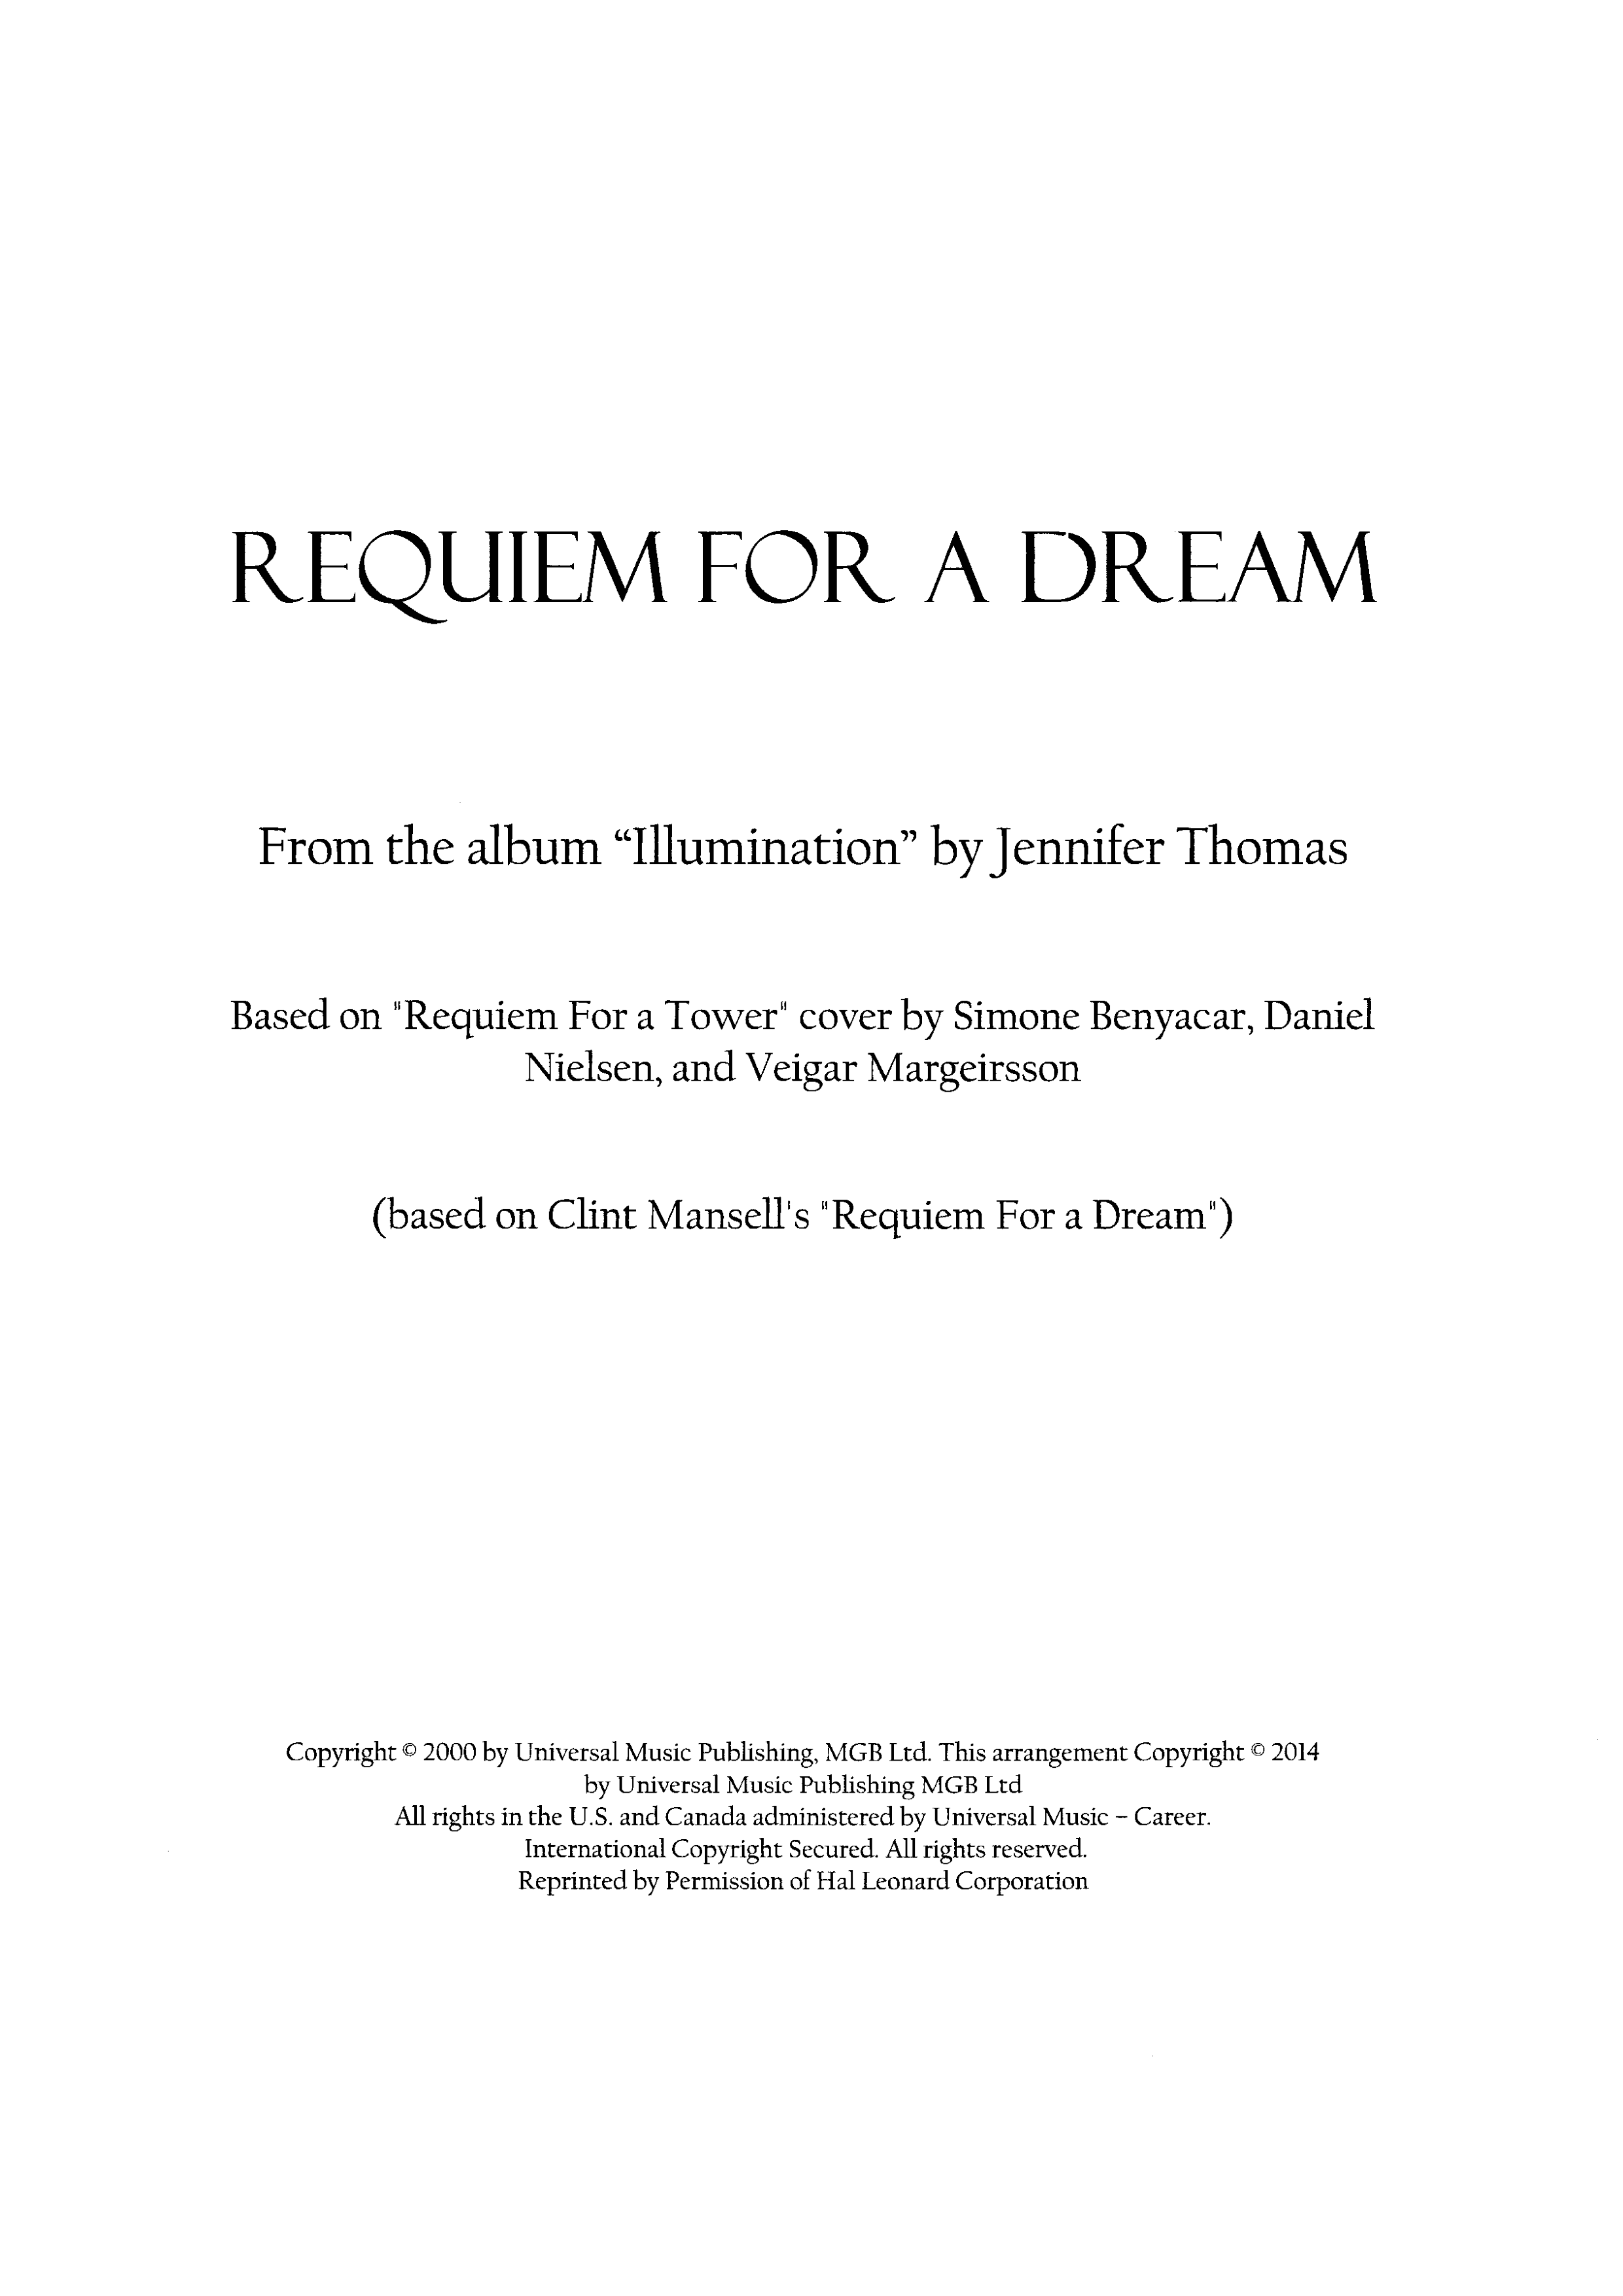 Requiem For A Dreamピアノ譜